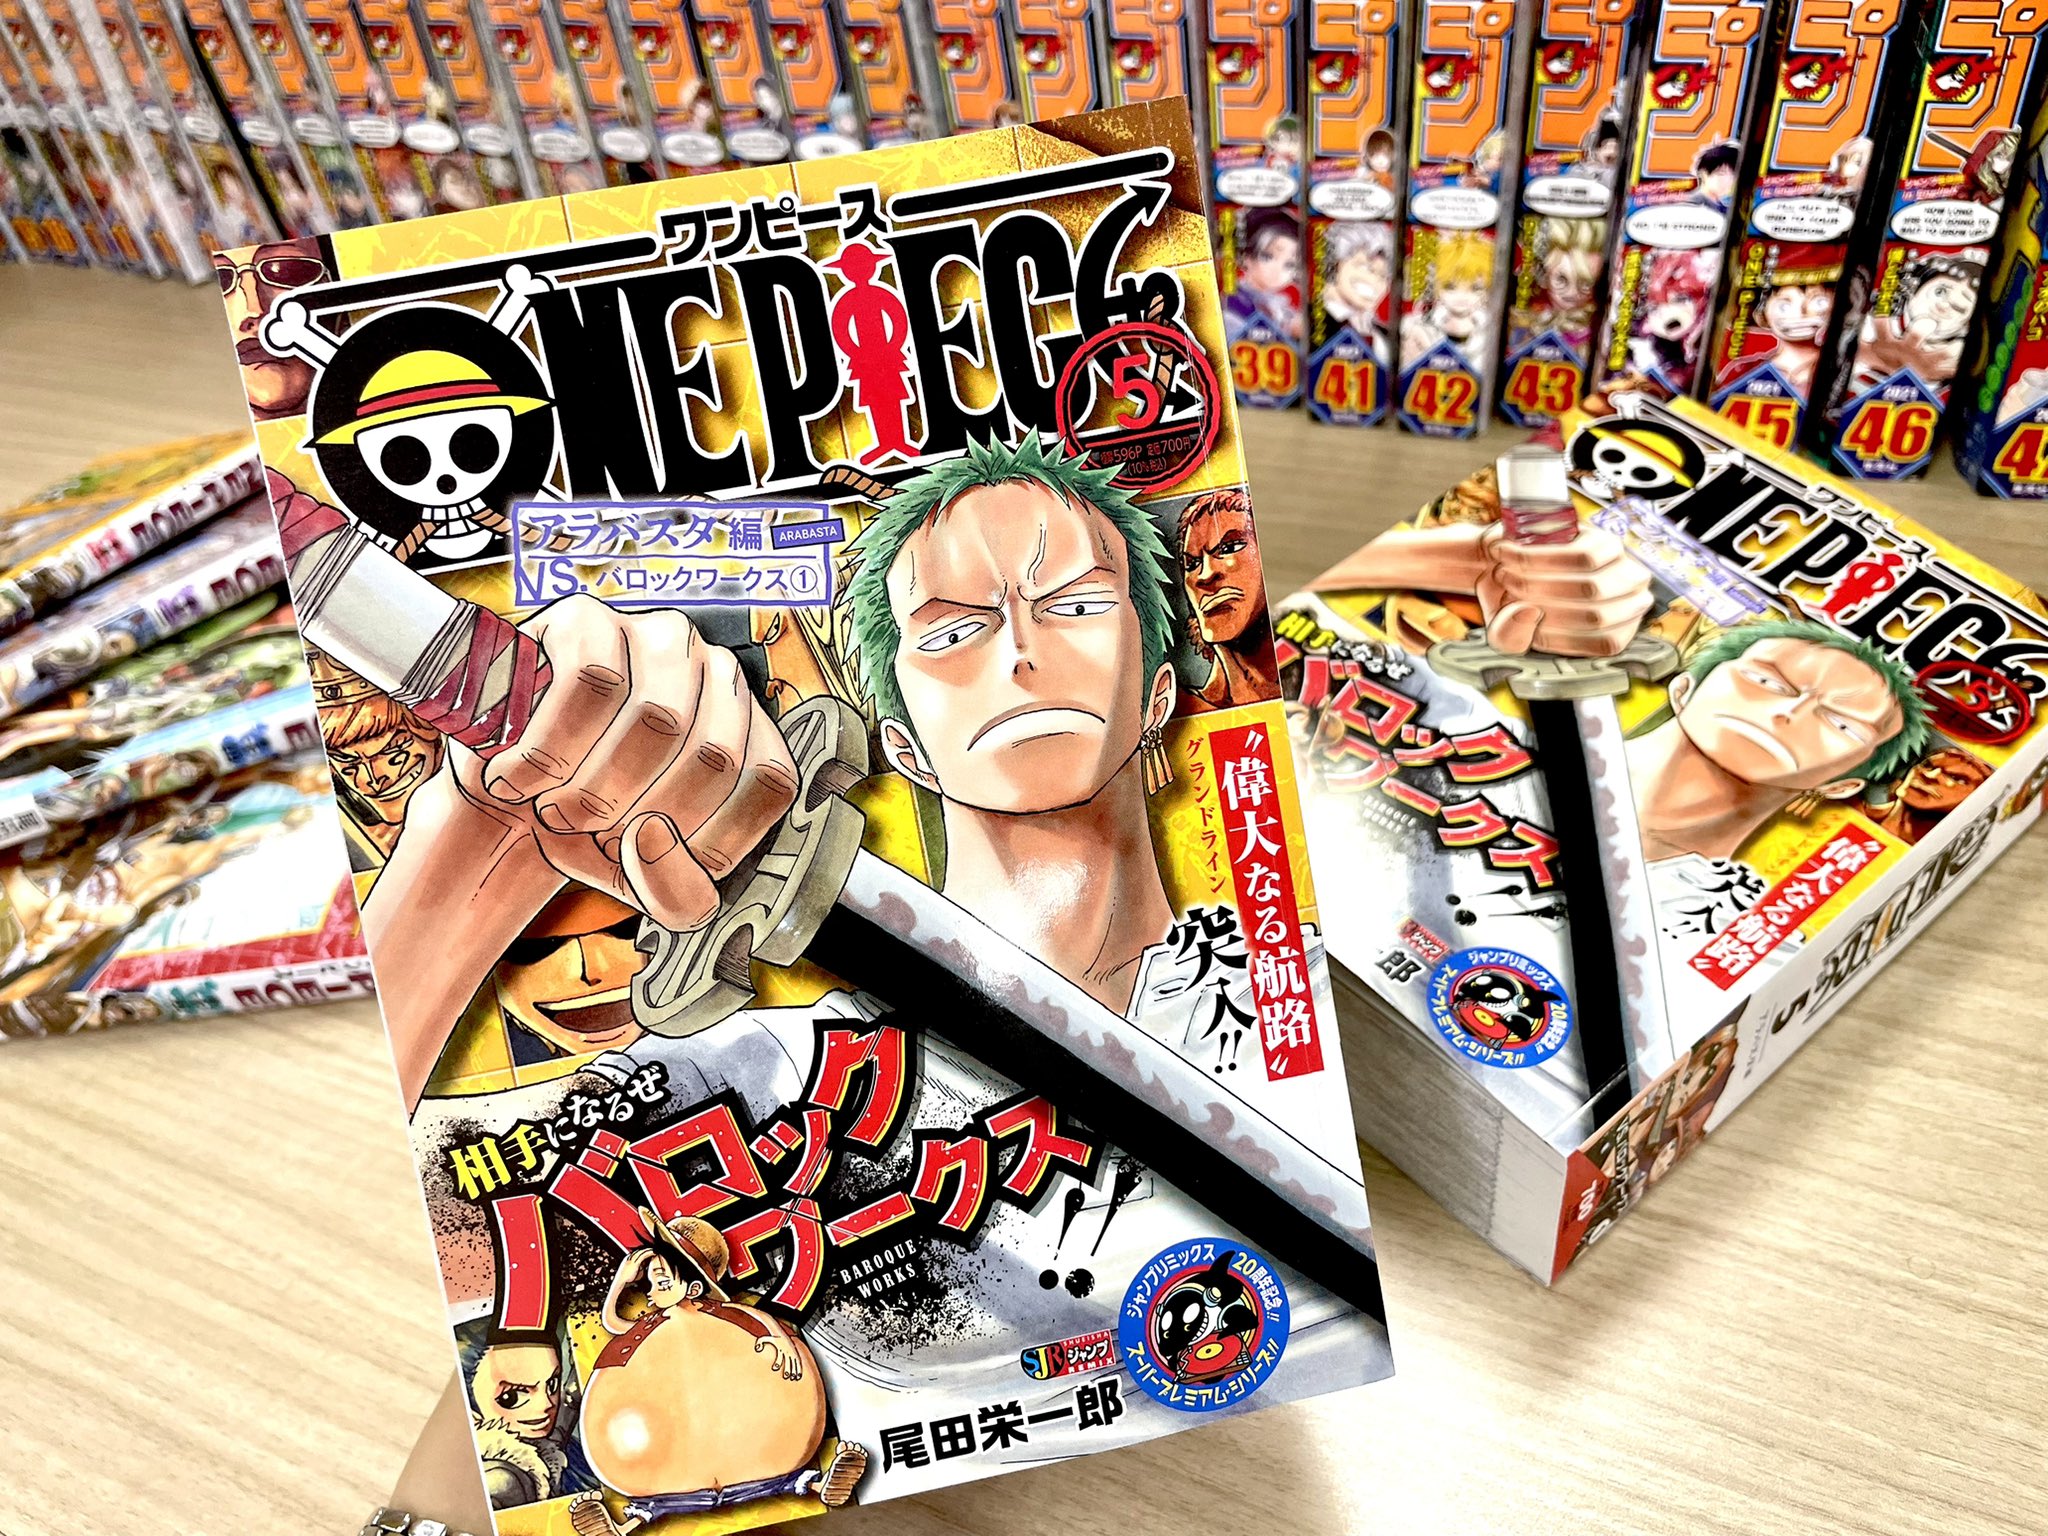 One Piece スタッフ 公式 Official 本日発売 ジャンプリミックス 偉大なる航路 に突入してから リトルガーデンを出航するまで 全29話分をまるっと収録 全国のコンビニなどで 隔週金曜日に新刊発売中です 公式サイトでチェック